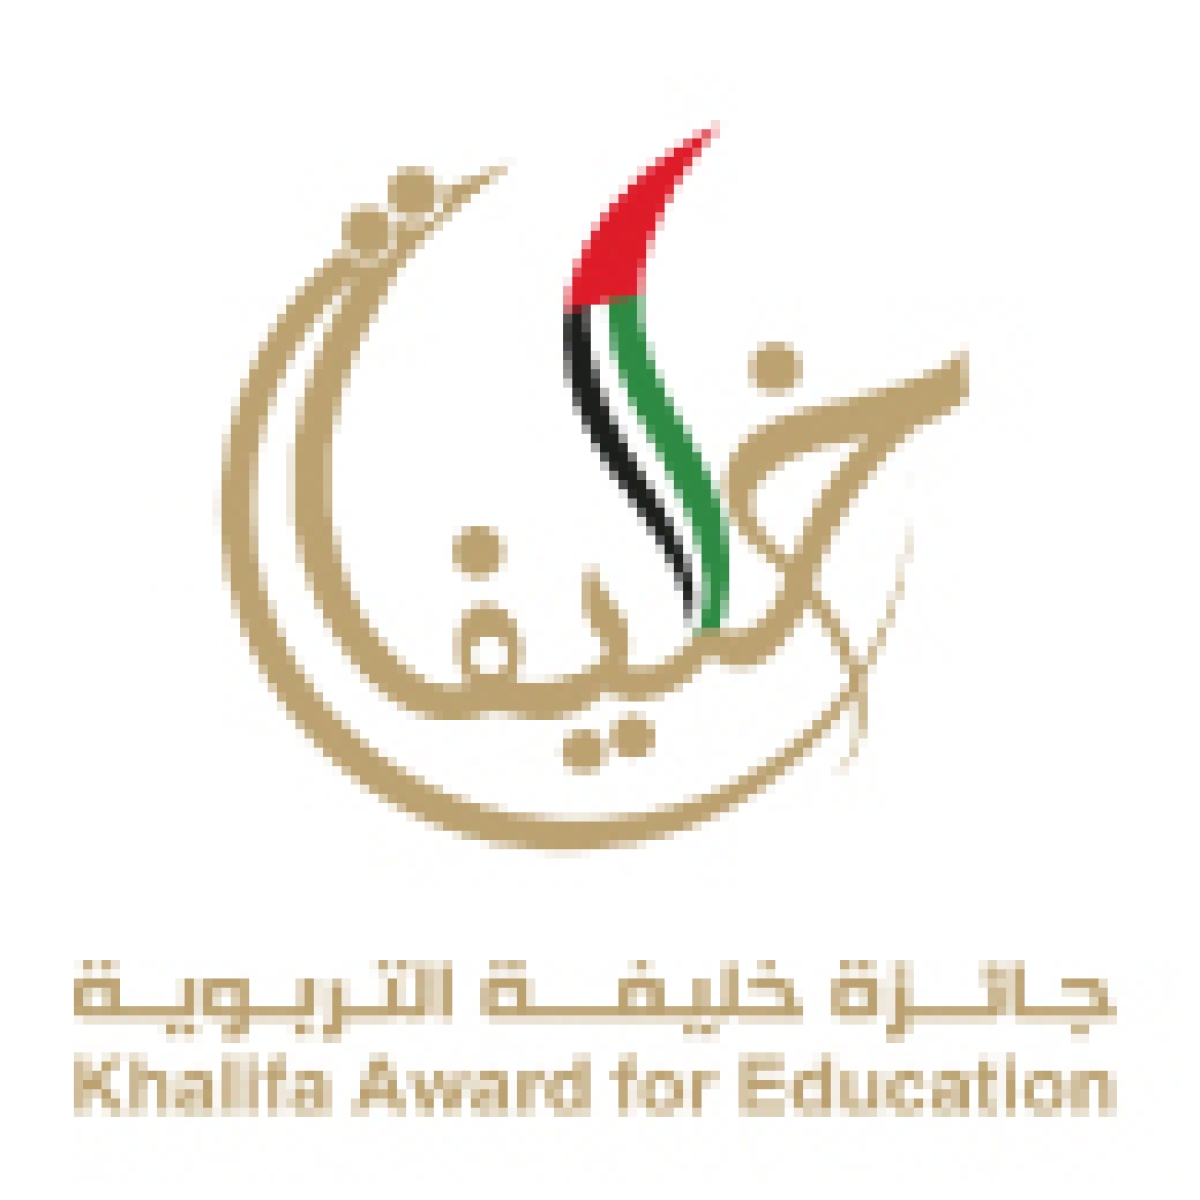 الاعلان عن: جائزة خليفة التربوية لعام 2021- 2022 في مجال الابداع في تدريس اللغة العربية (فئة الأستاذ الجامعي)